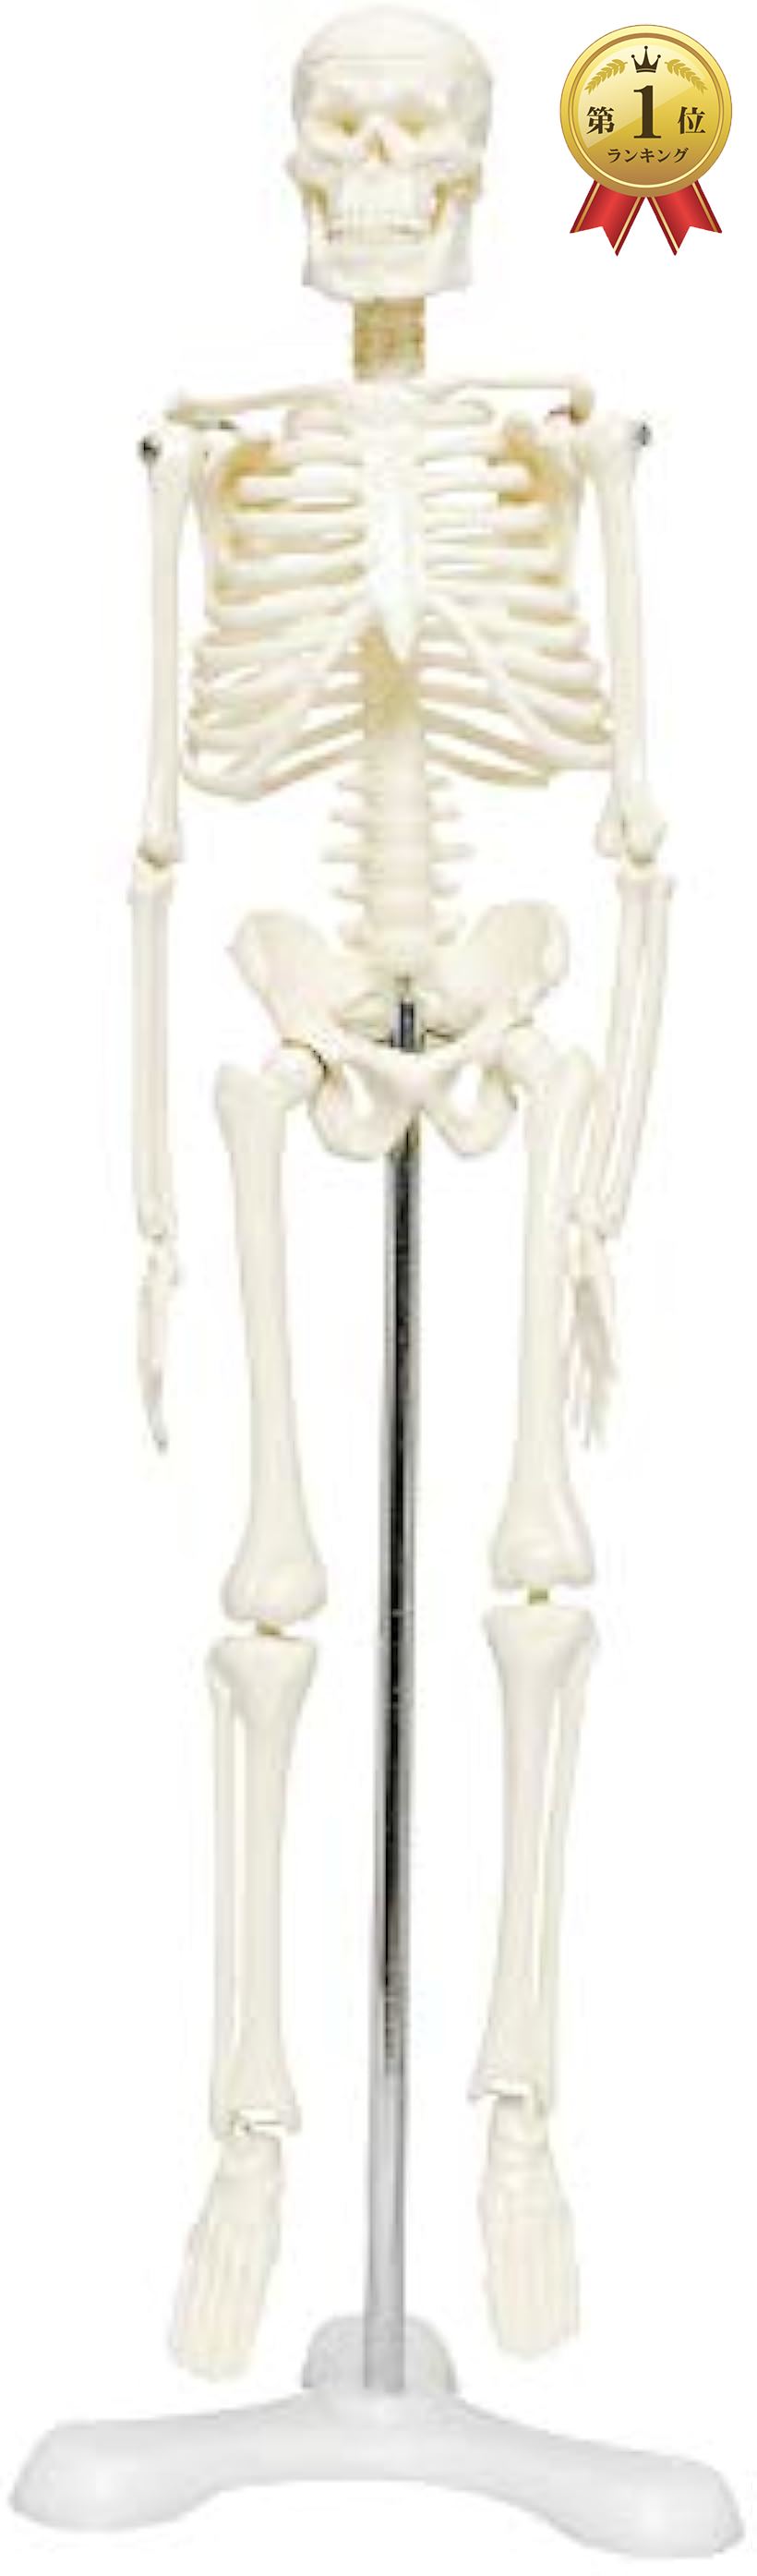 《週末限定タイムセール》 MONOLIFE 人体骨格模型 骨格標本 稼動 直立 スタンド 供え 教材 三つ足 ホワイト モデル 4 台座 1 45cm